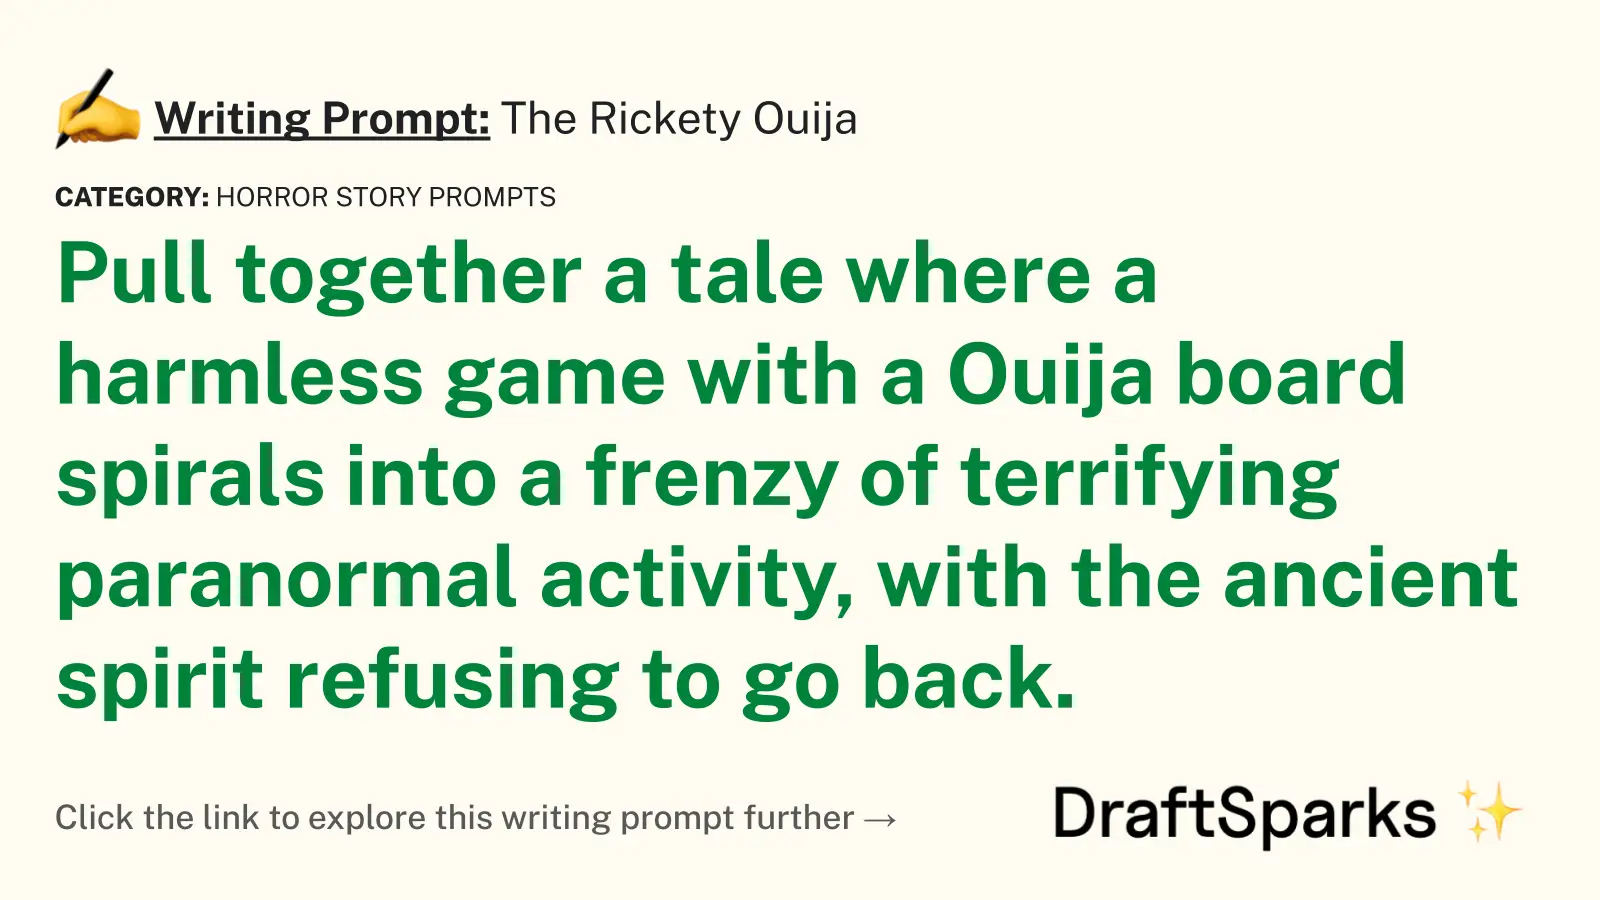 The Rickety Ouija